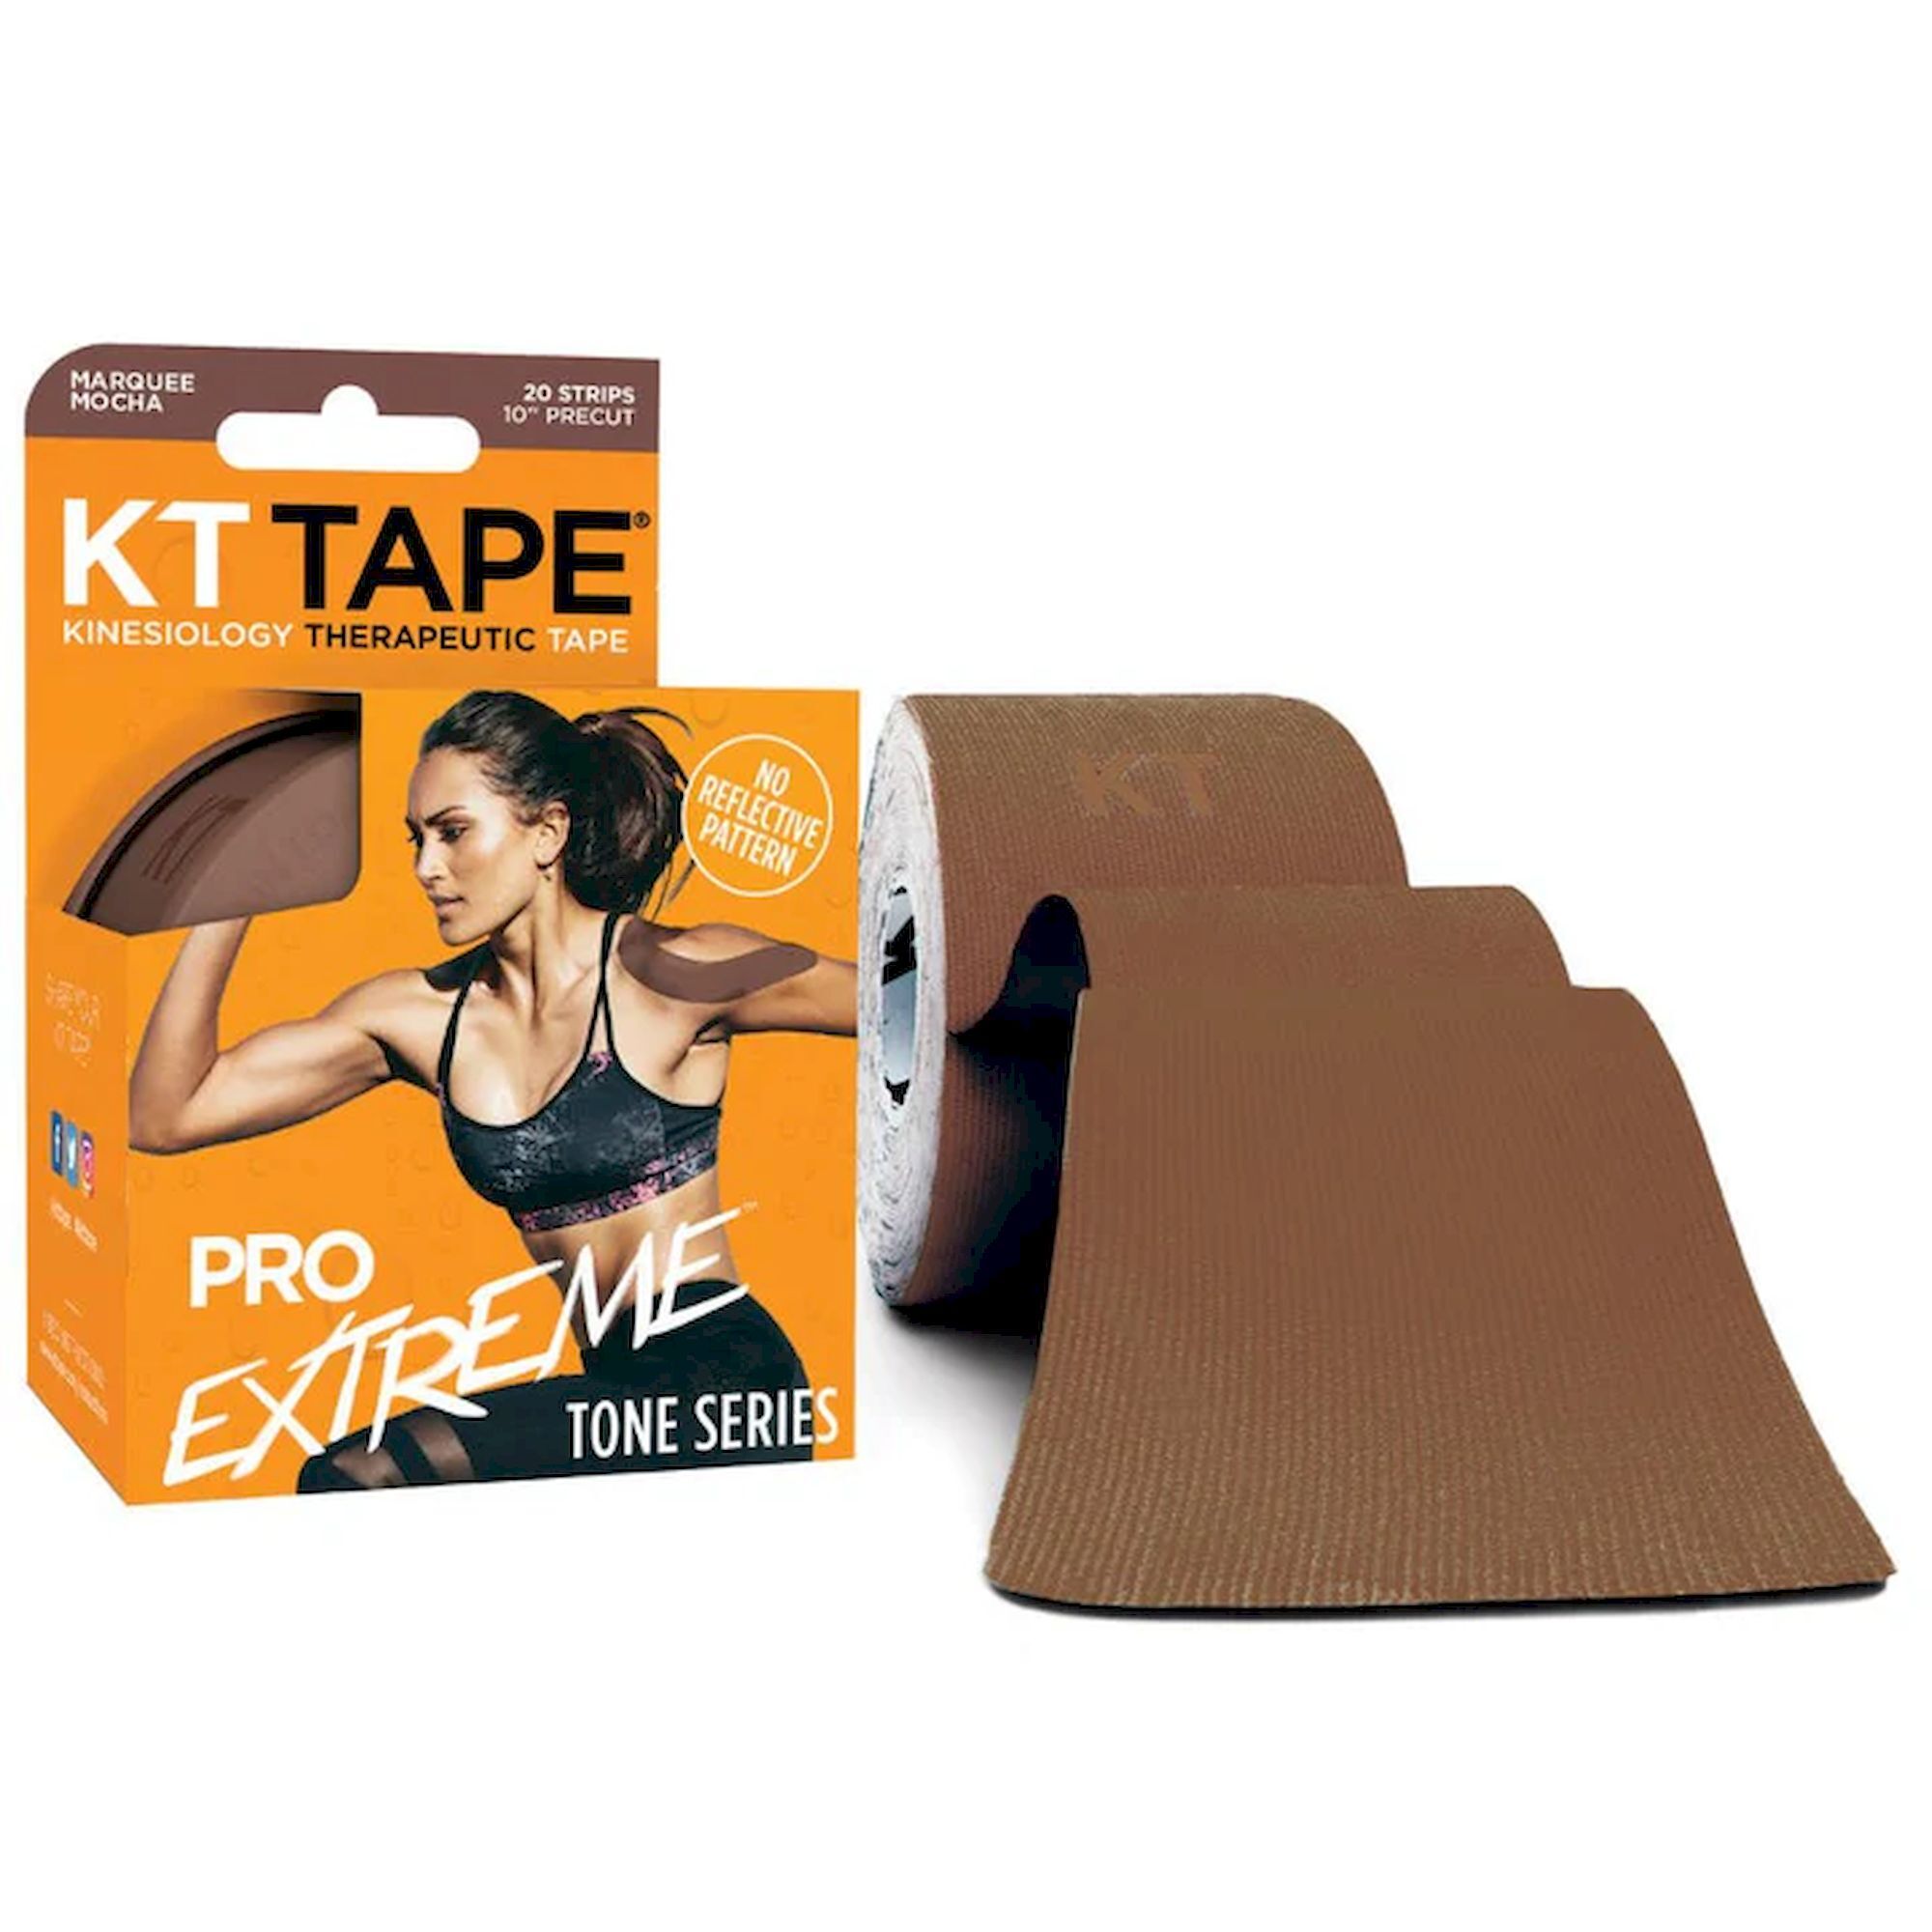 KT Tape PRO Extreme Tape Precut - Kinesiologie tape | Hardloop